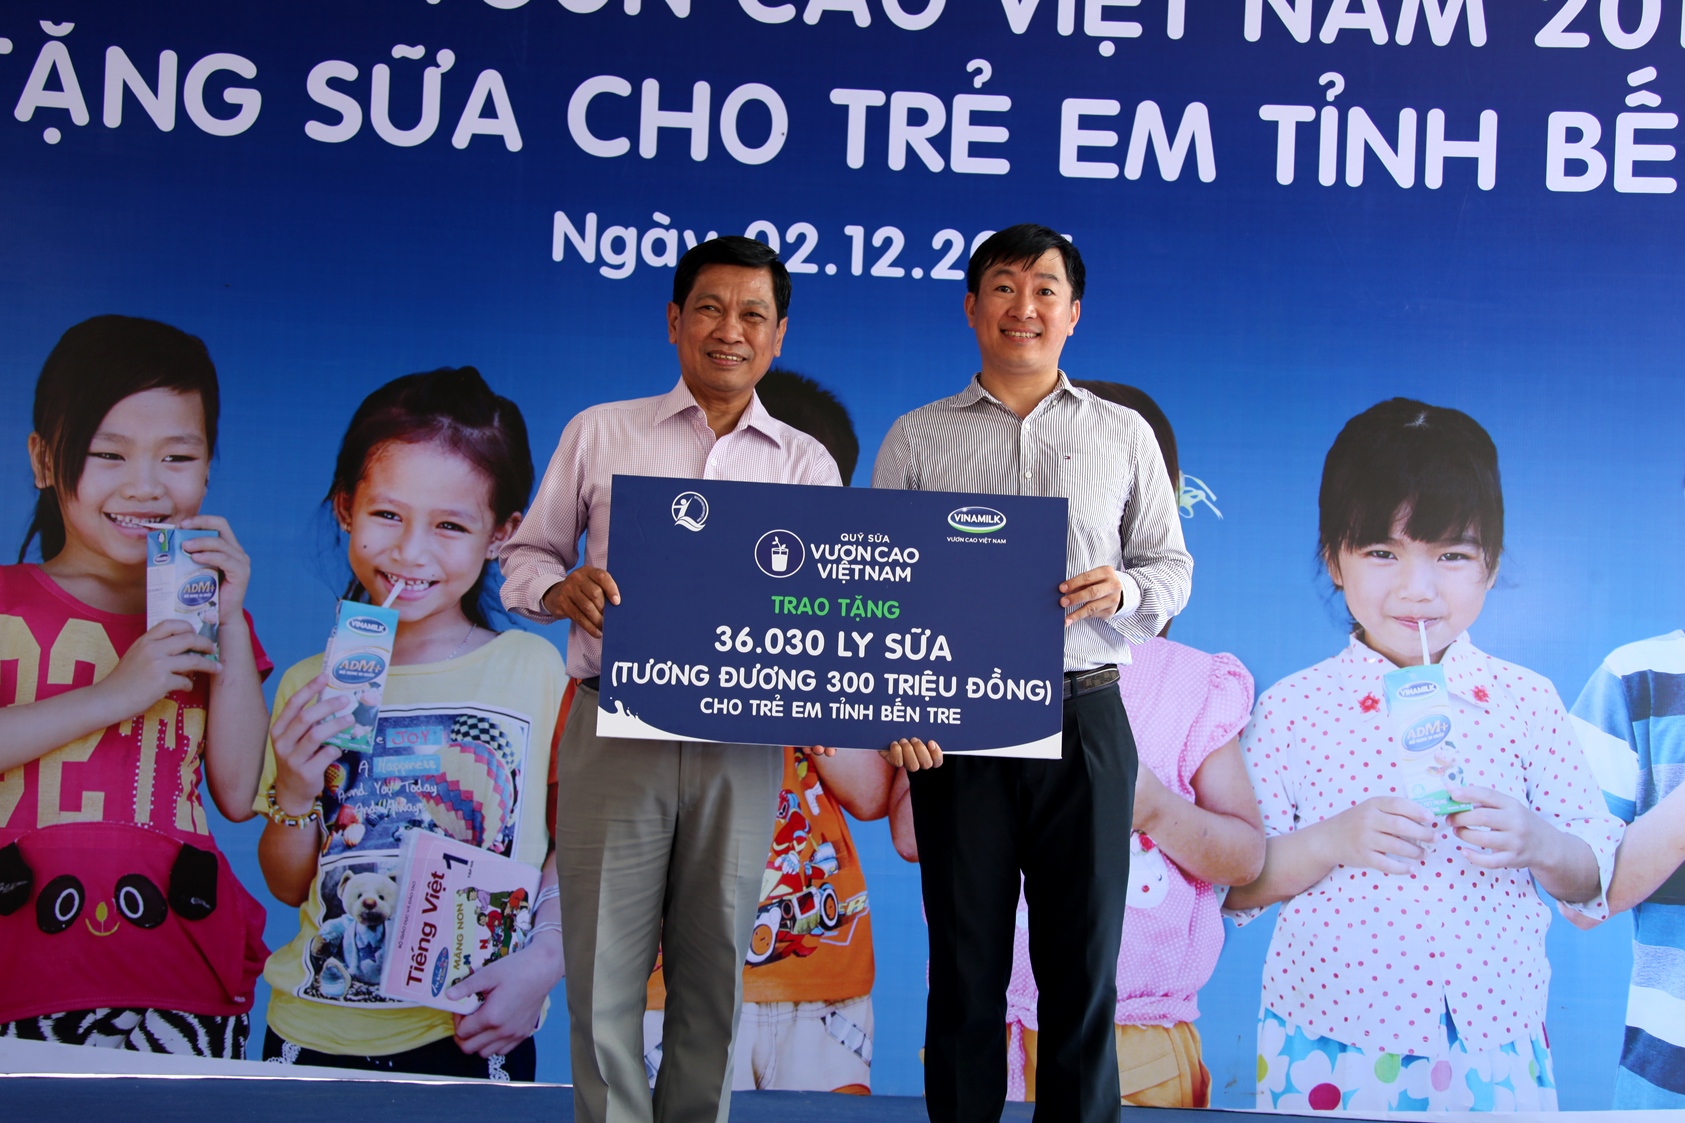 Ông Đỗ Thanh Tuấn, Trưởng bộ phận Đối ngoại Vinamilk trao tặng bảng tượng trưng 36.030 ly sữa tương đương 300 triệu đồng cho đại diện Quỹ Bảo trợ trẻ em tỉnh Bến Tre